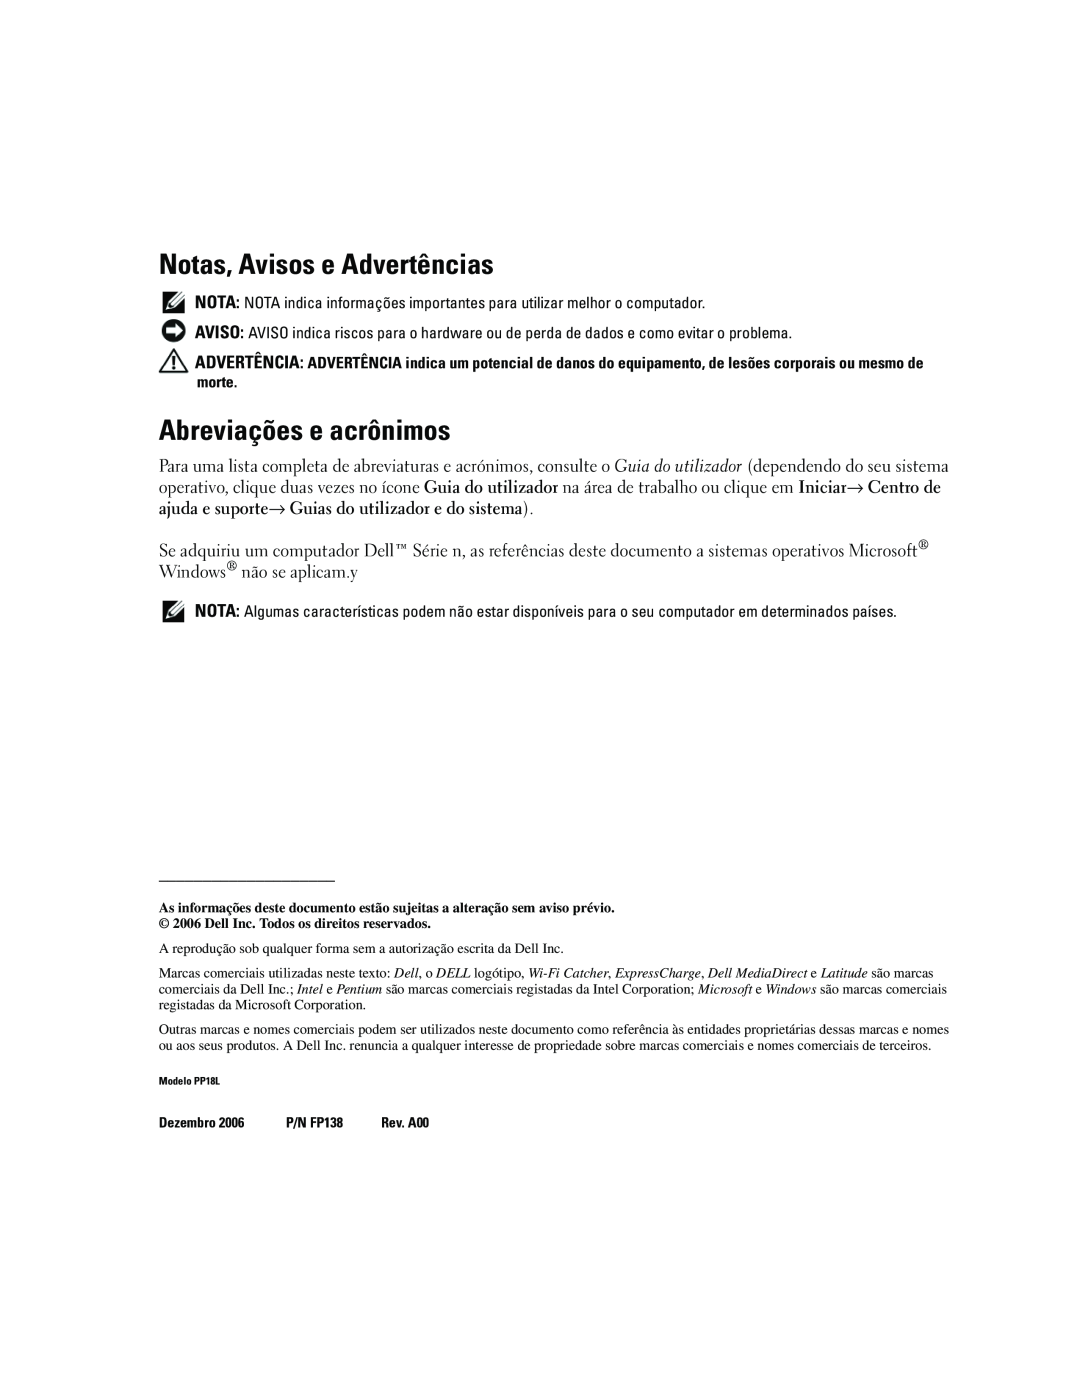 Dell ATG D620 manual Notas, Avisos e Advertências, Abreviações e acrônimos 